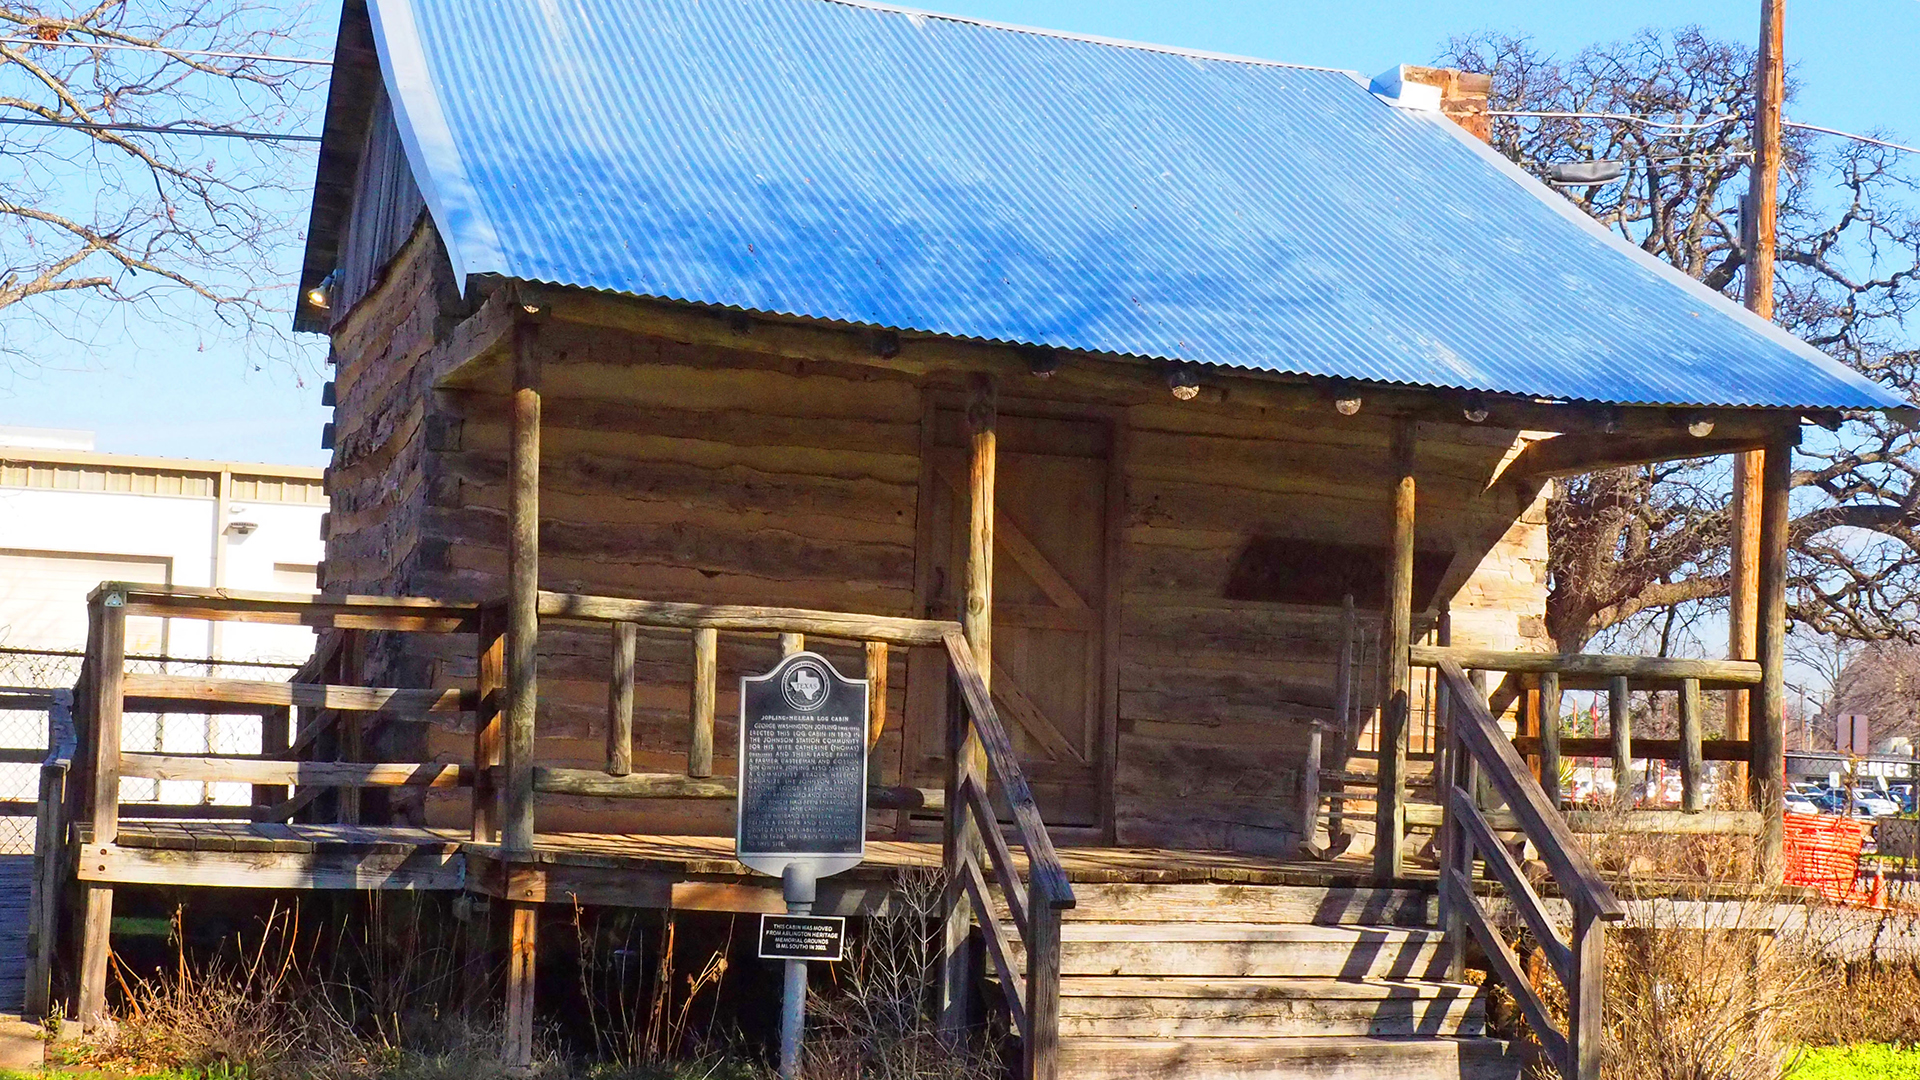 Jopling-Melear Cabin at Knapp Heritage Park, Arlington, TX